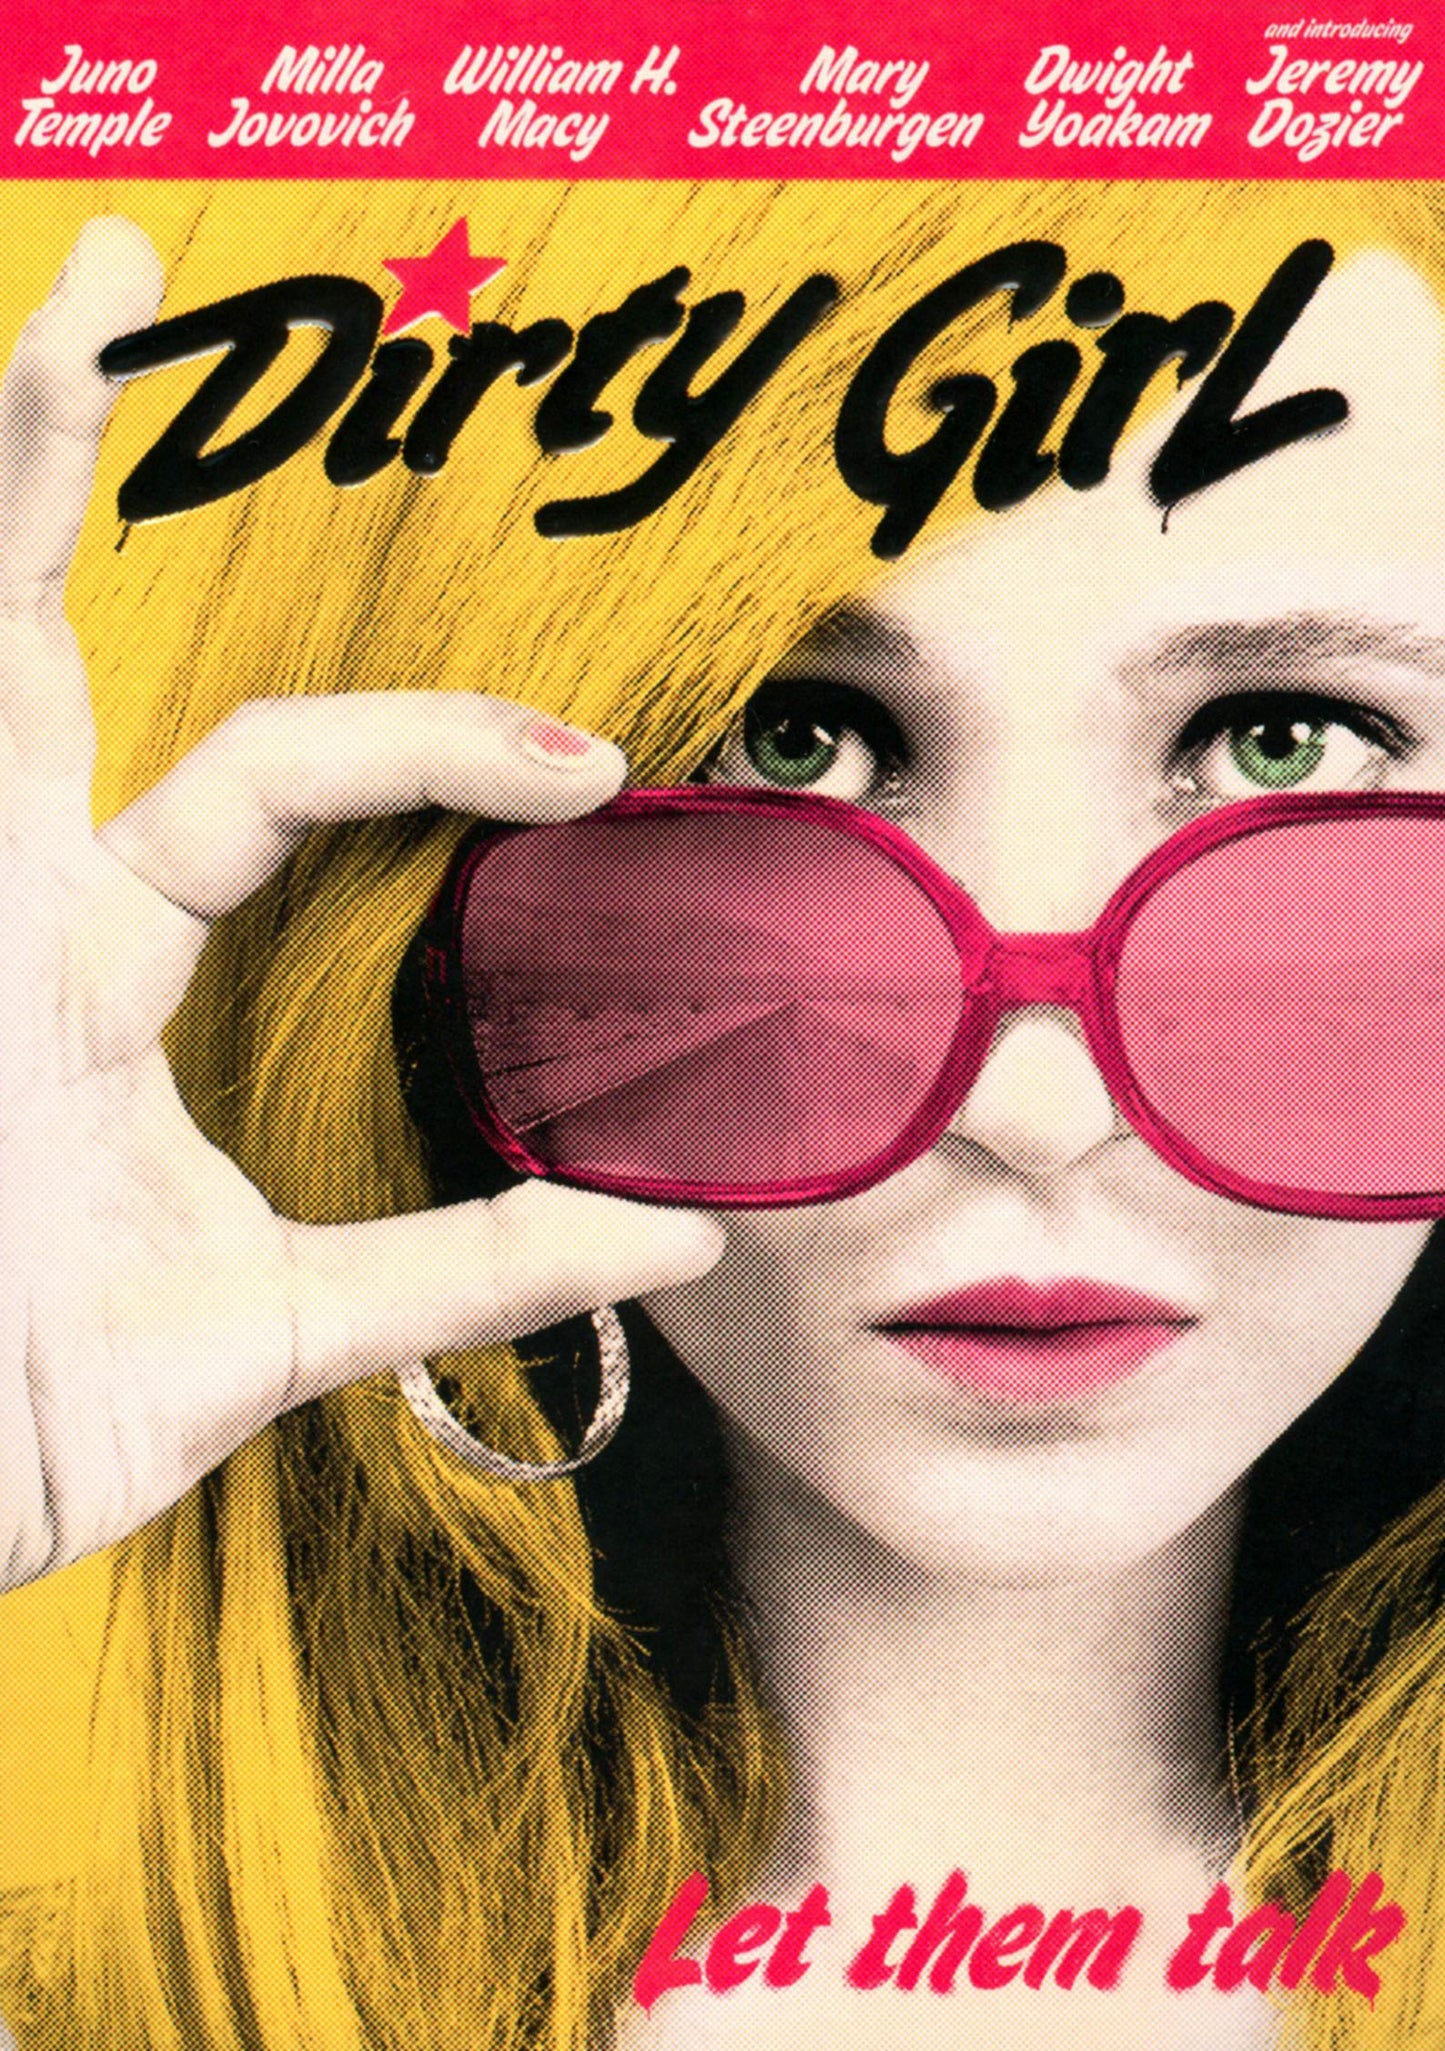 Dirty Girl cover art